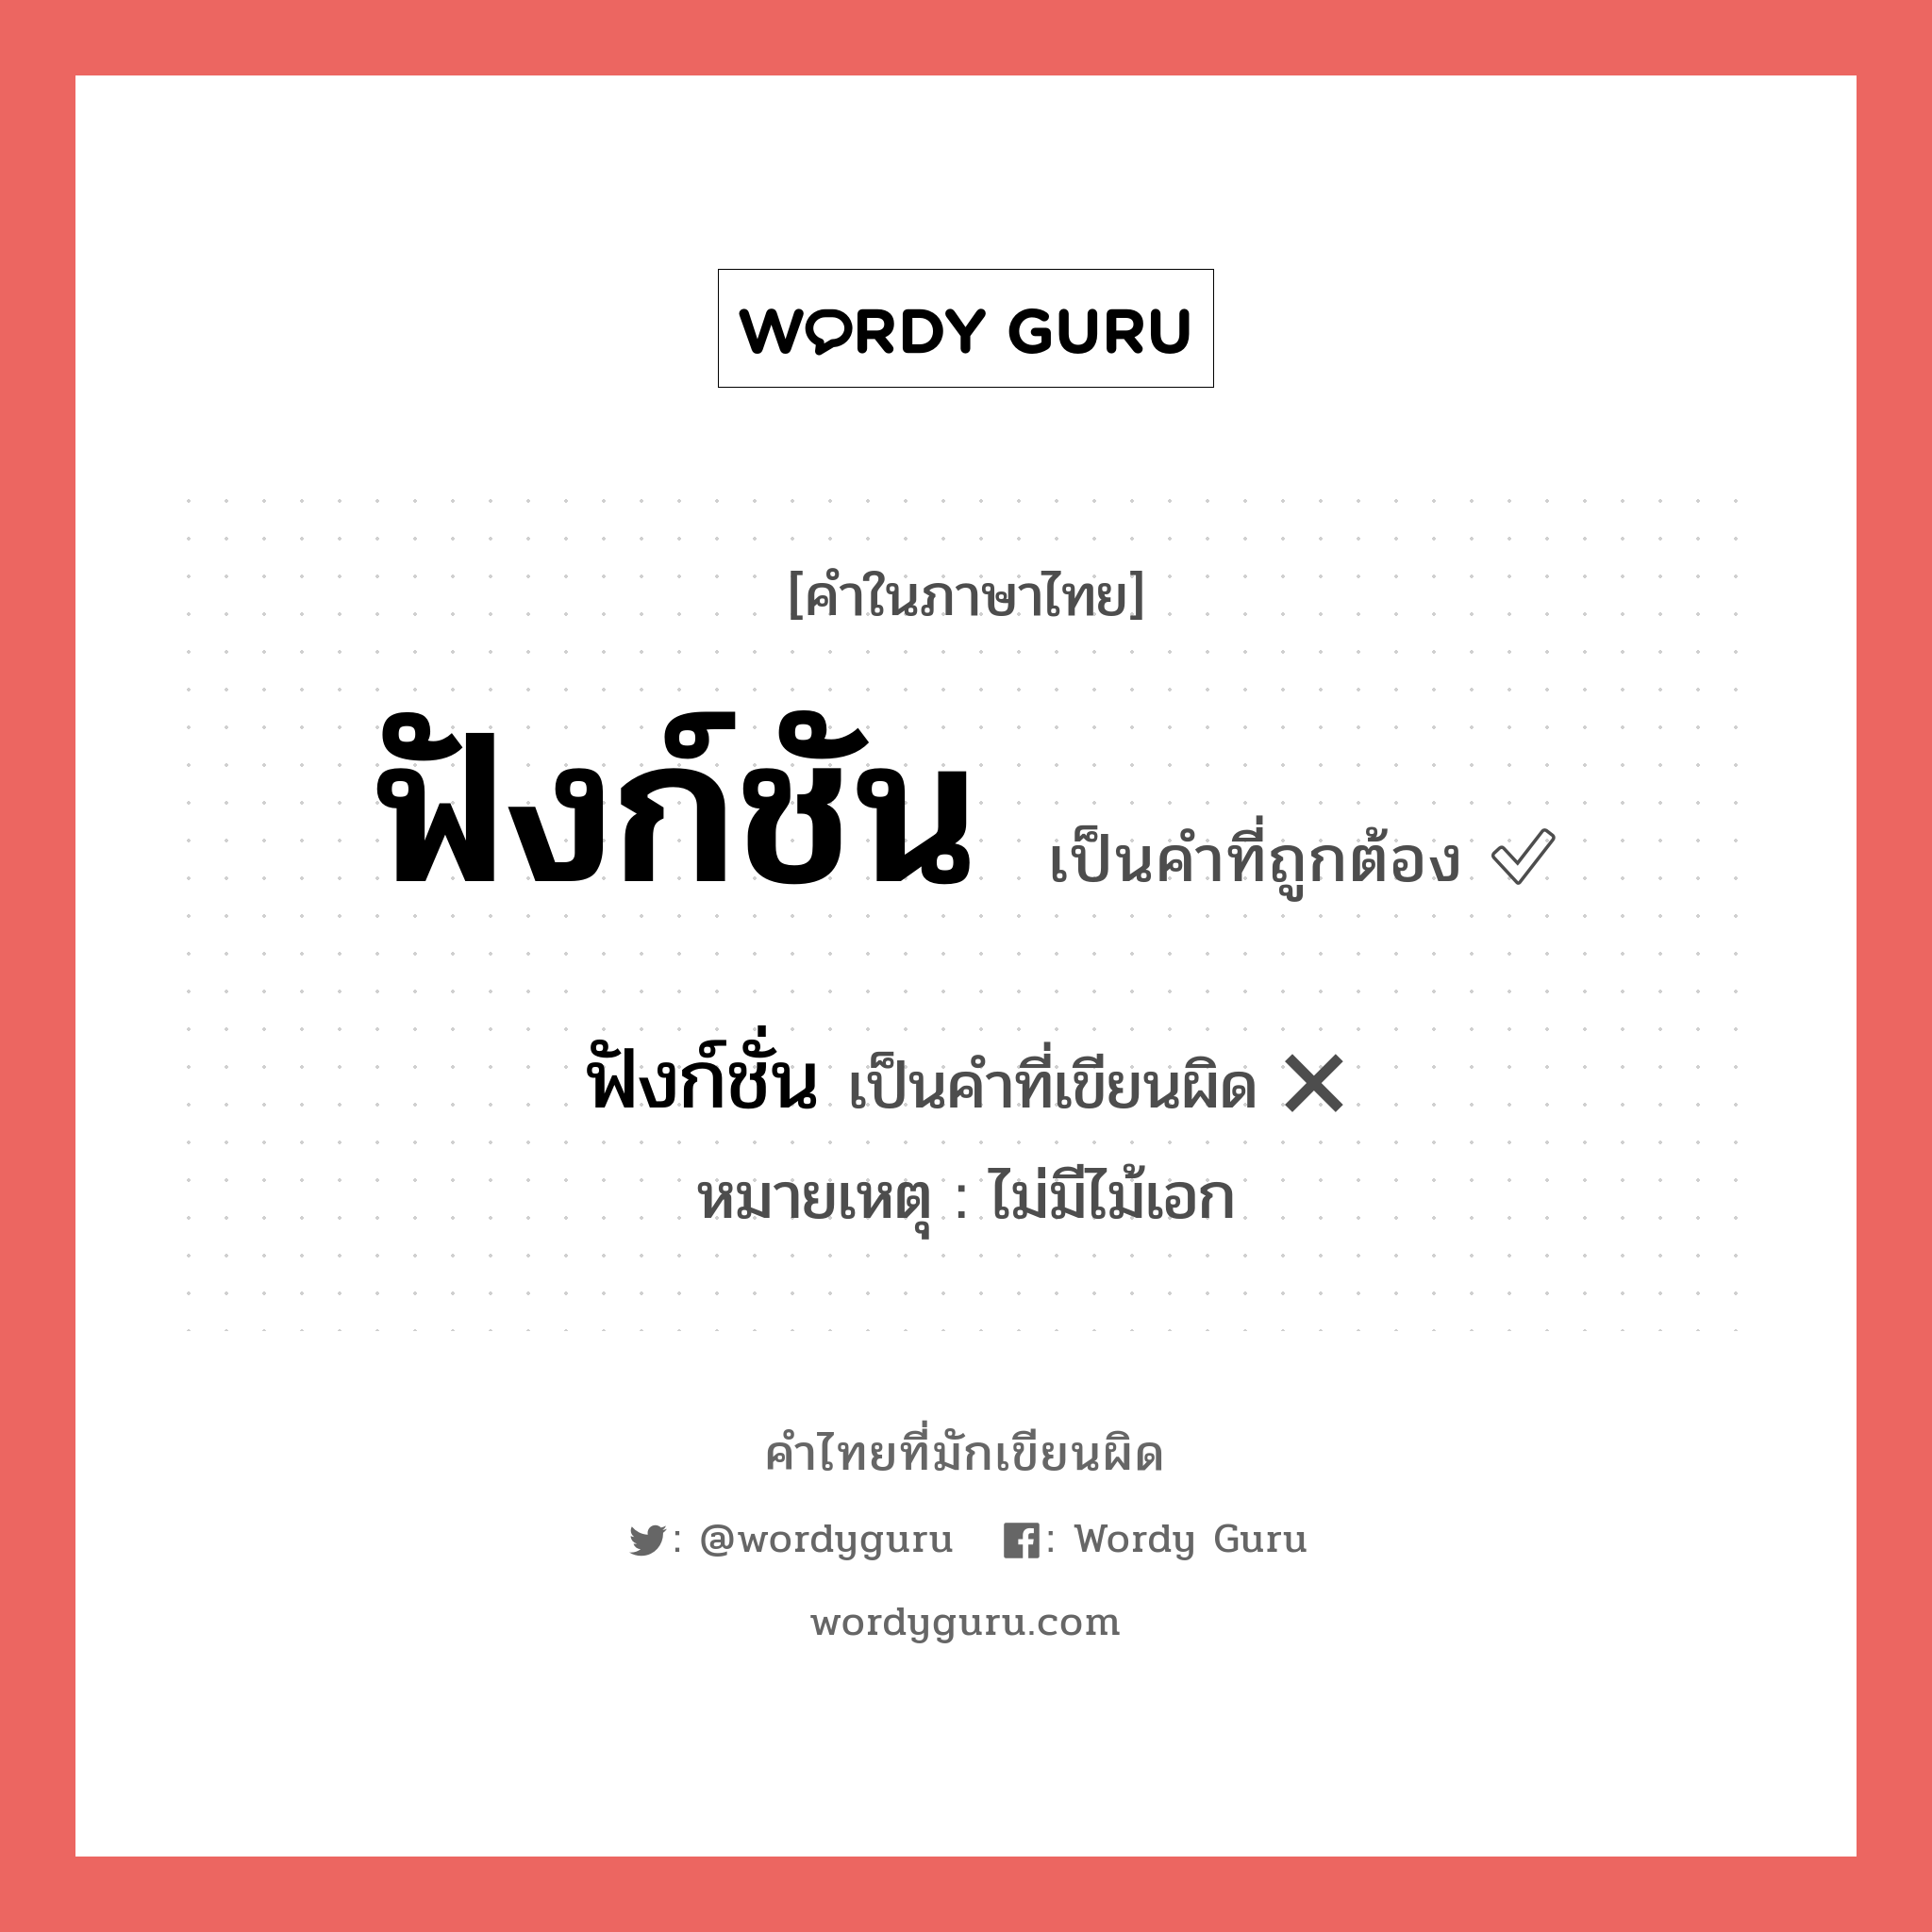 ฟังก์ชั่น หรือ ฟังก์ชัน คำไหนเขียนถูก?, คำในภาษาไทยที่มักเขียนผิด ฟังก์ชั่น คำที่ผิด ❌ ฟังก์ชัน หมายเหตุ ไม่มีไม้เอก